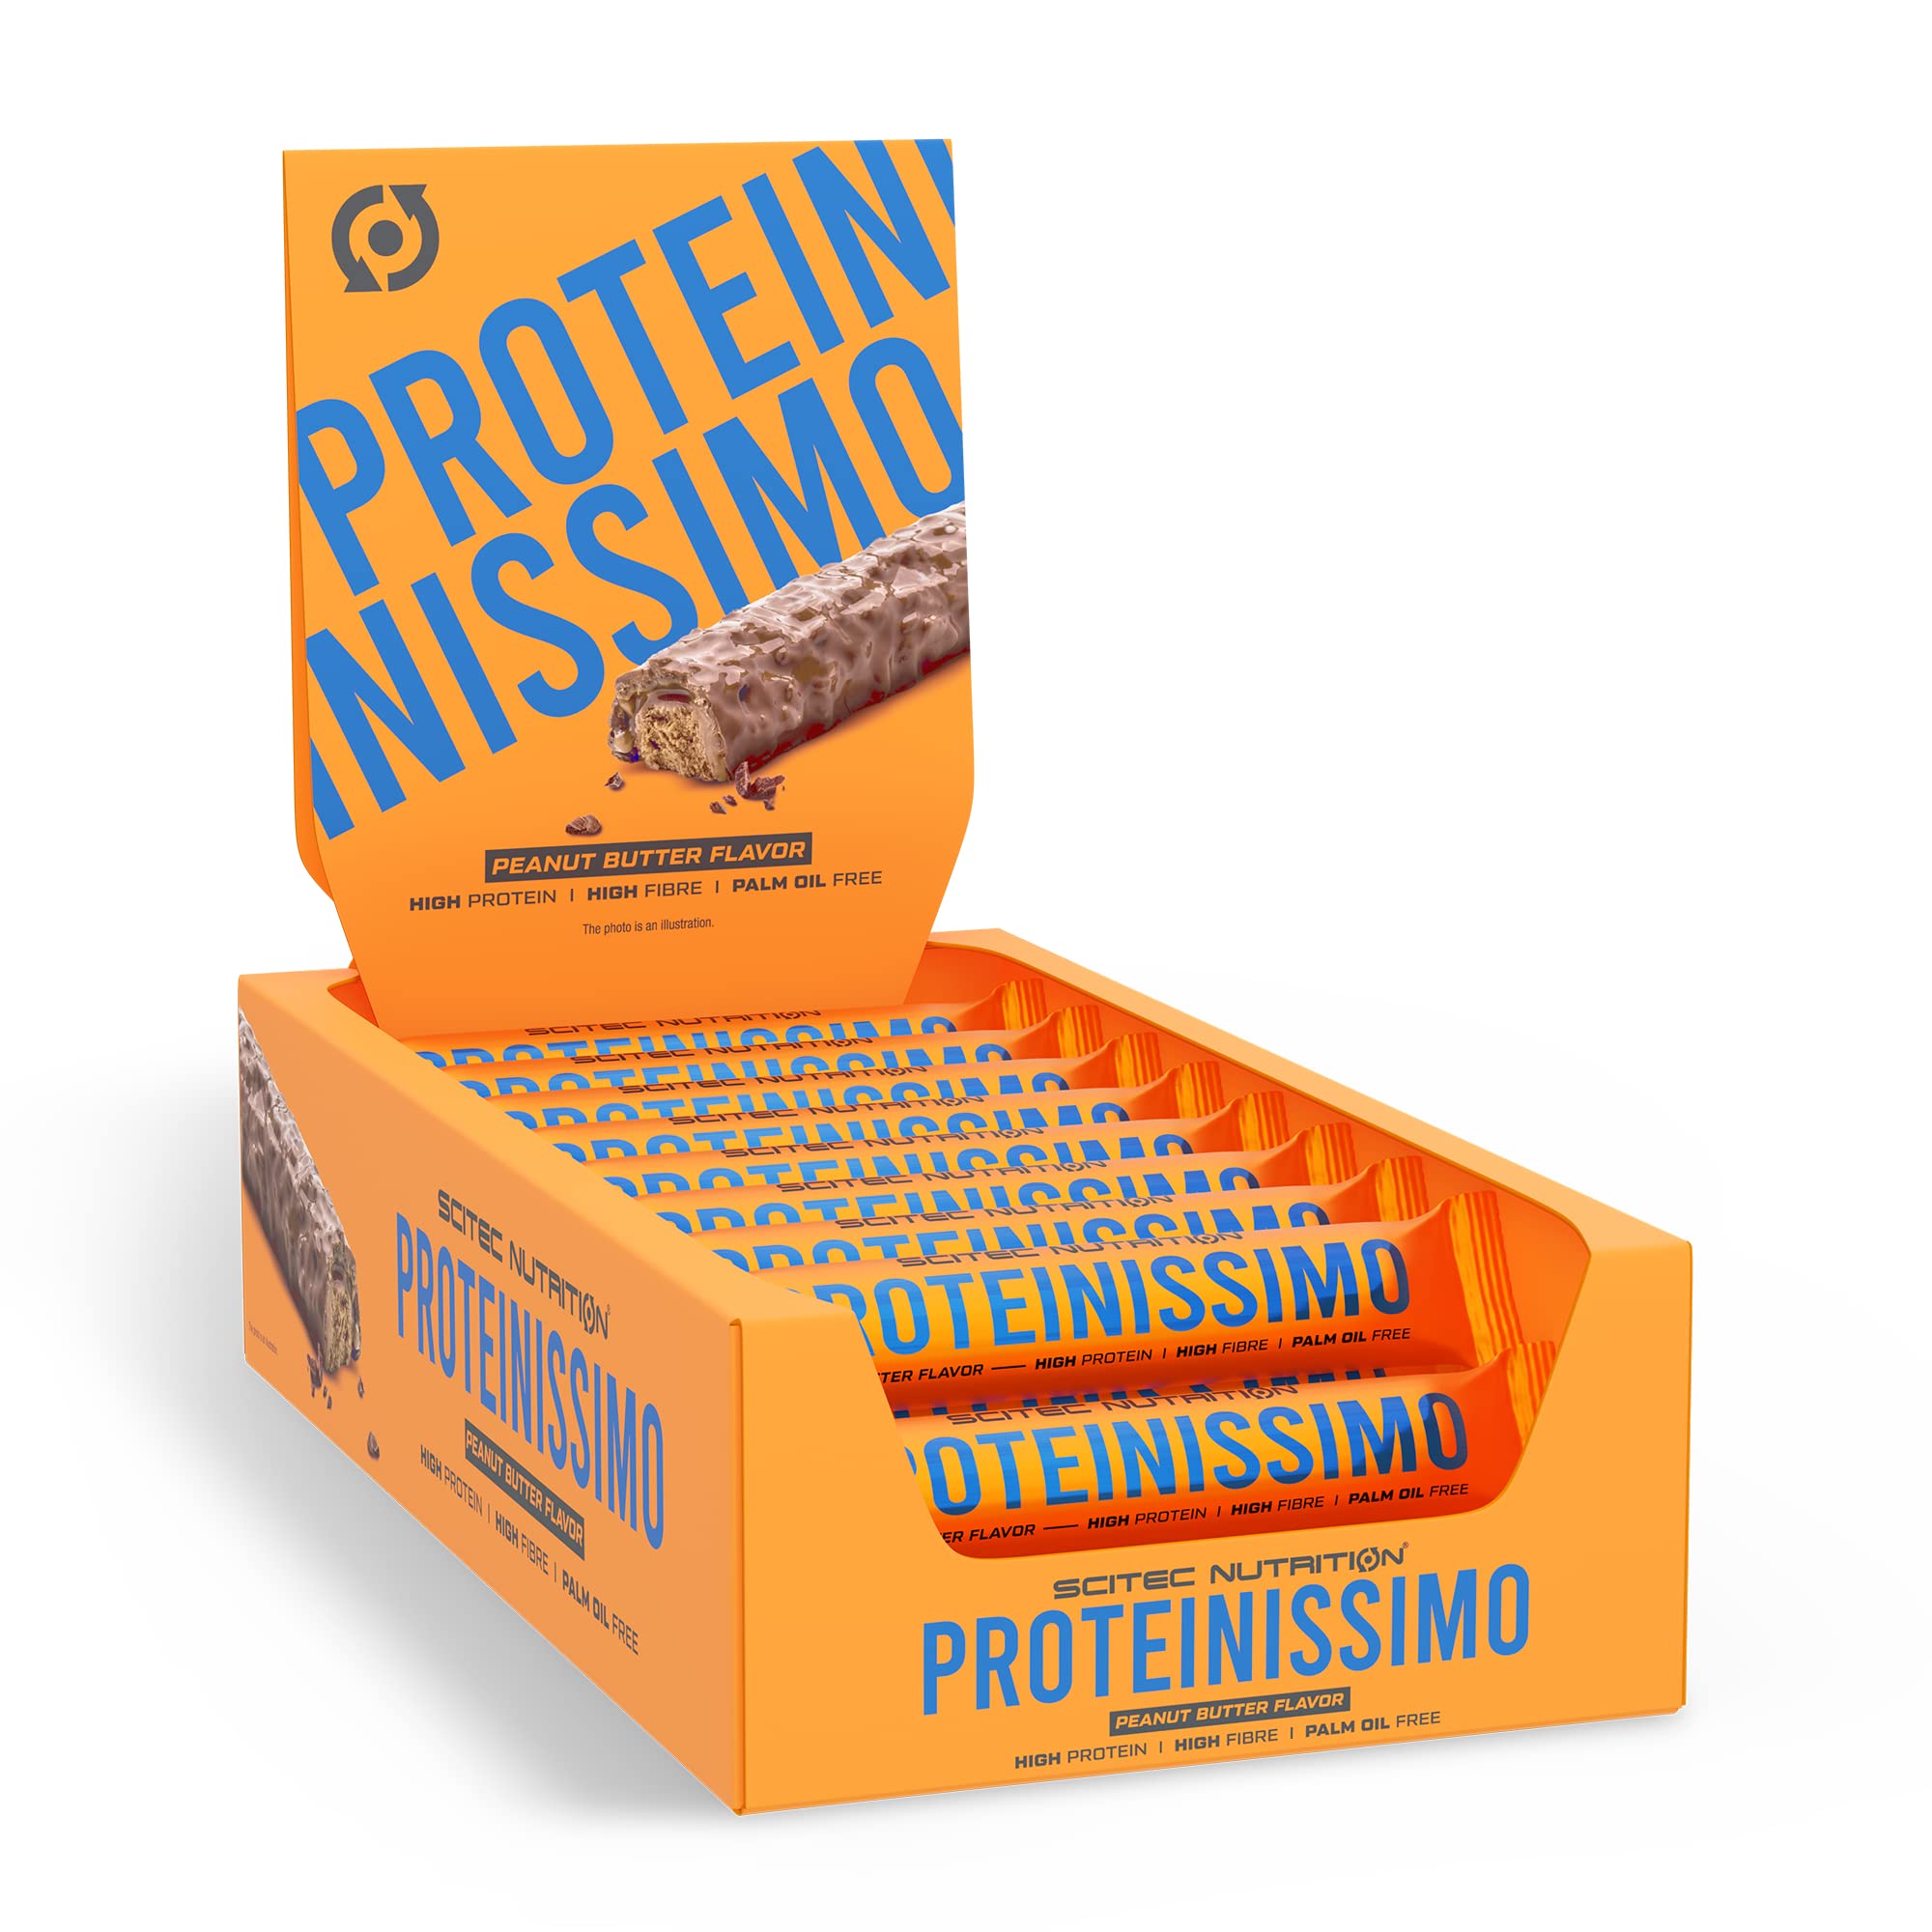 Scitec Nutrition Proteinissimo, knuspriger Proteinriegeln mit einer Beschichtung, hoher Proteingehalt, Ballaststoffgehalt, palmölfrei, 24 * 50 g, Erdnussbutter